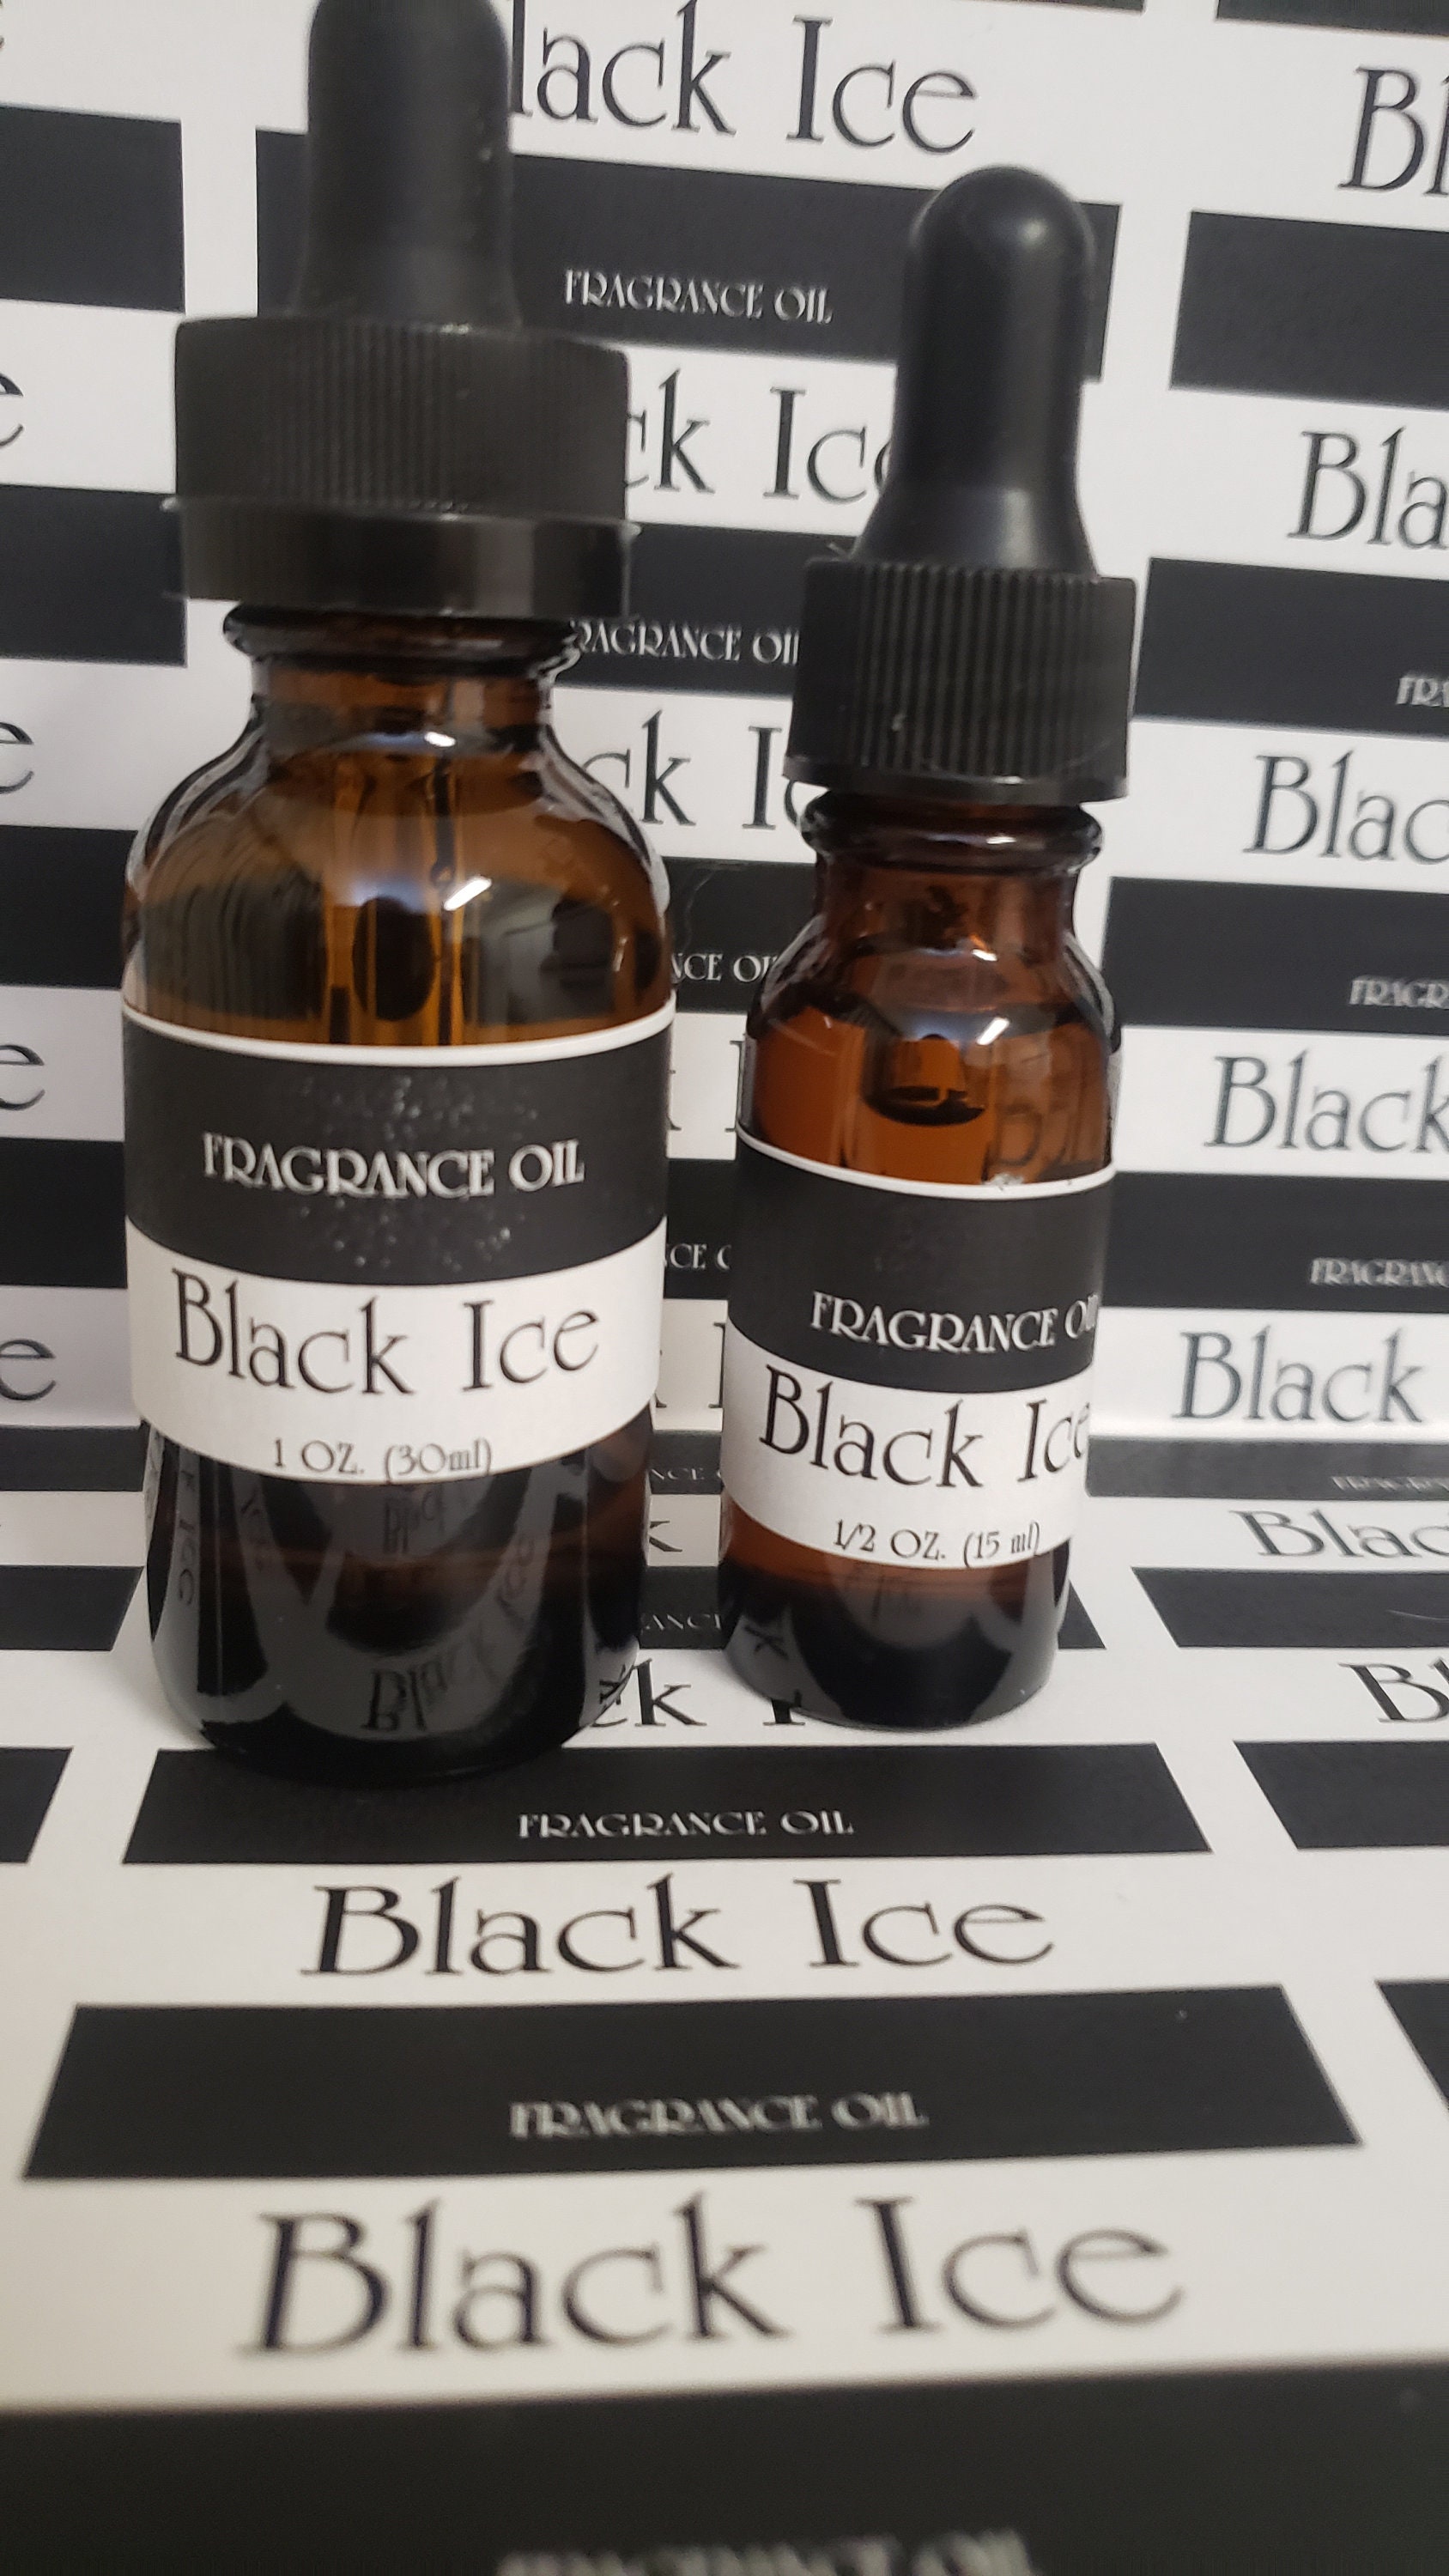 Black Ice - Fragrance Oil